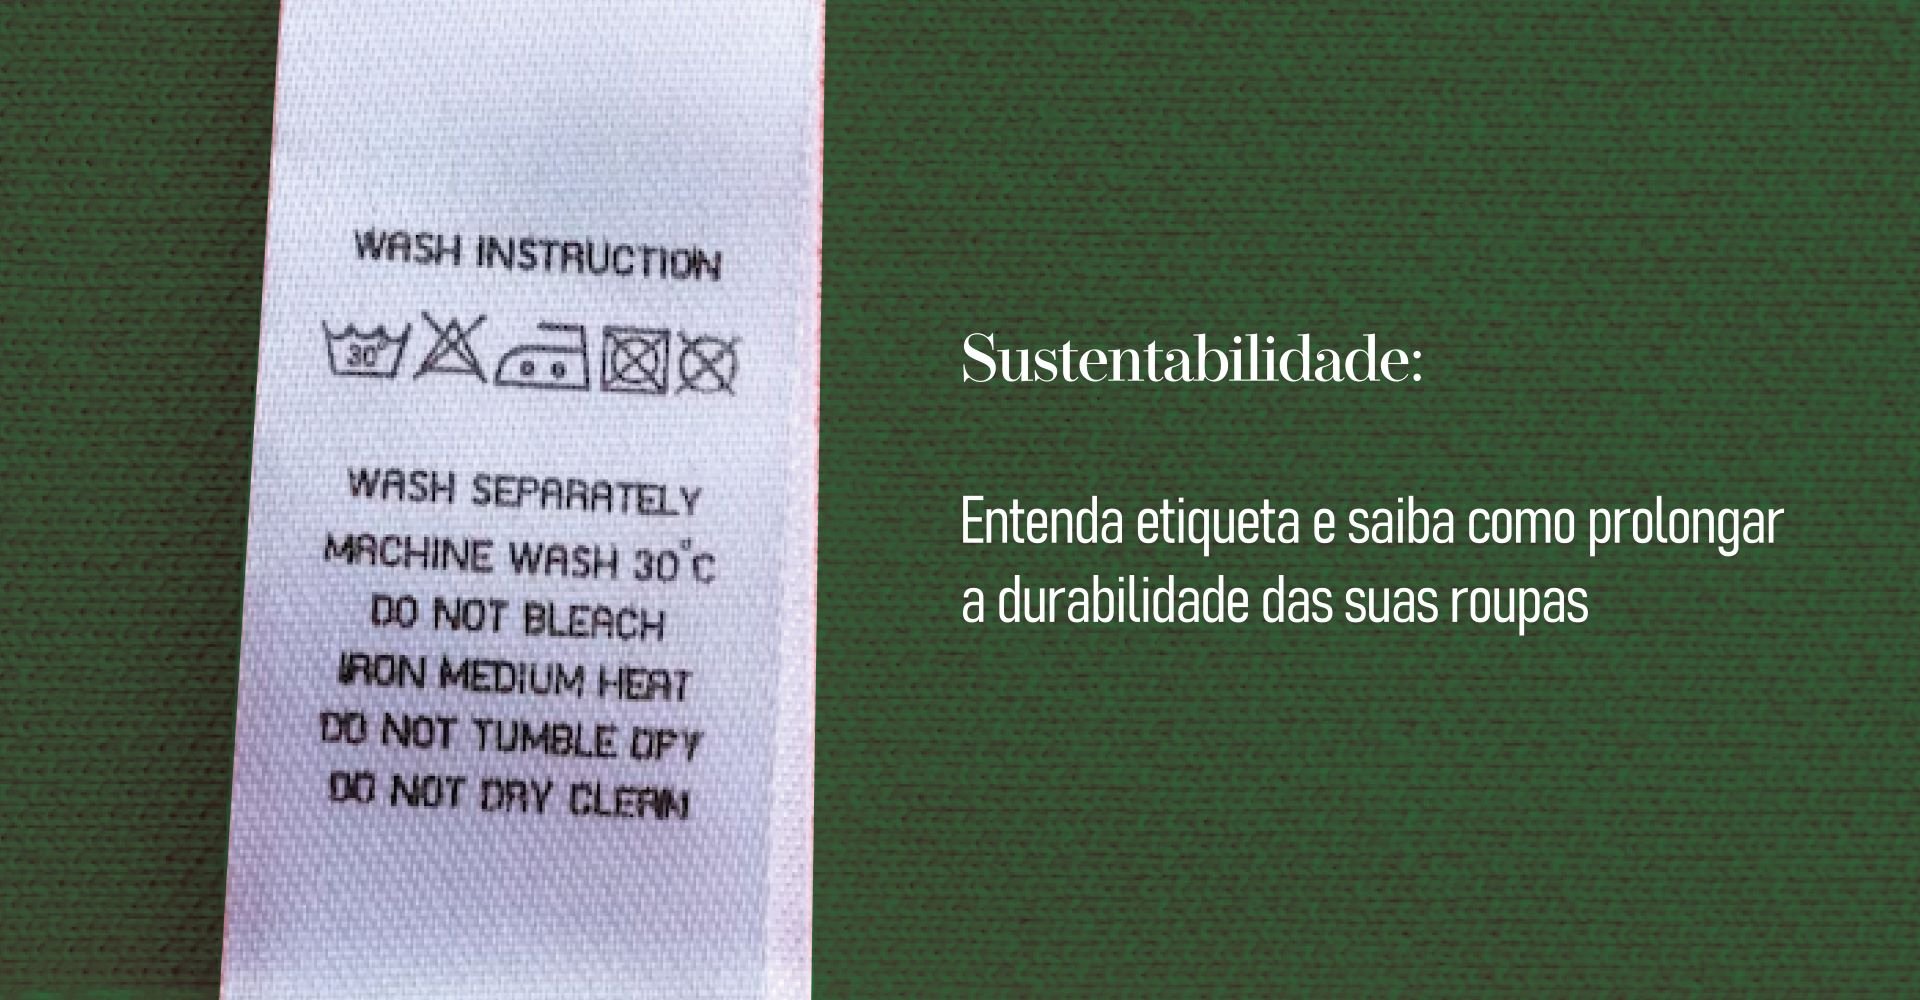 Sustentabilidade: Entenda a etiqueta de composição e saiba como prolongar a durabilidade das suas roupas